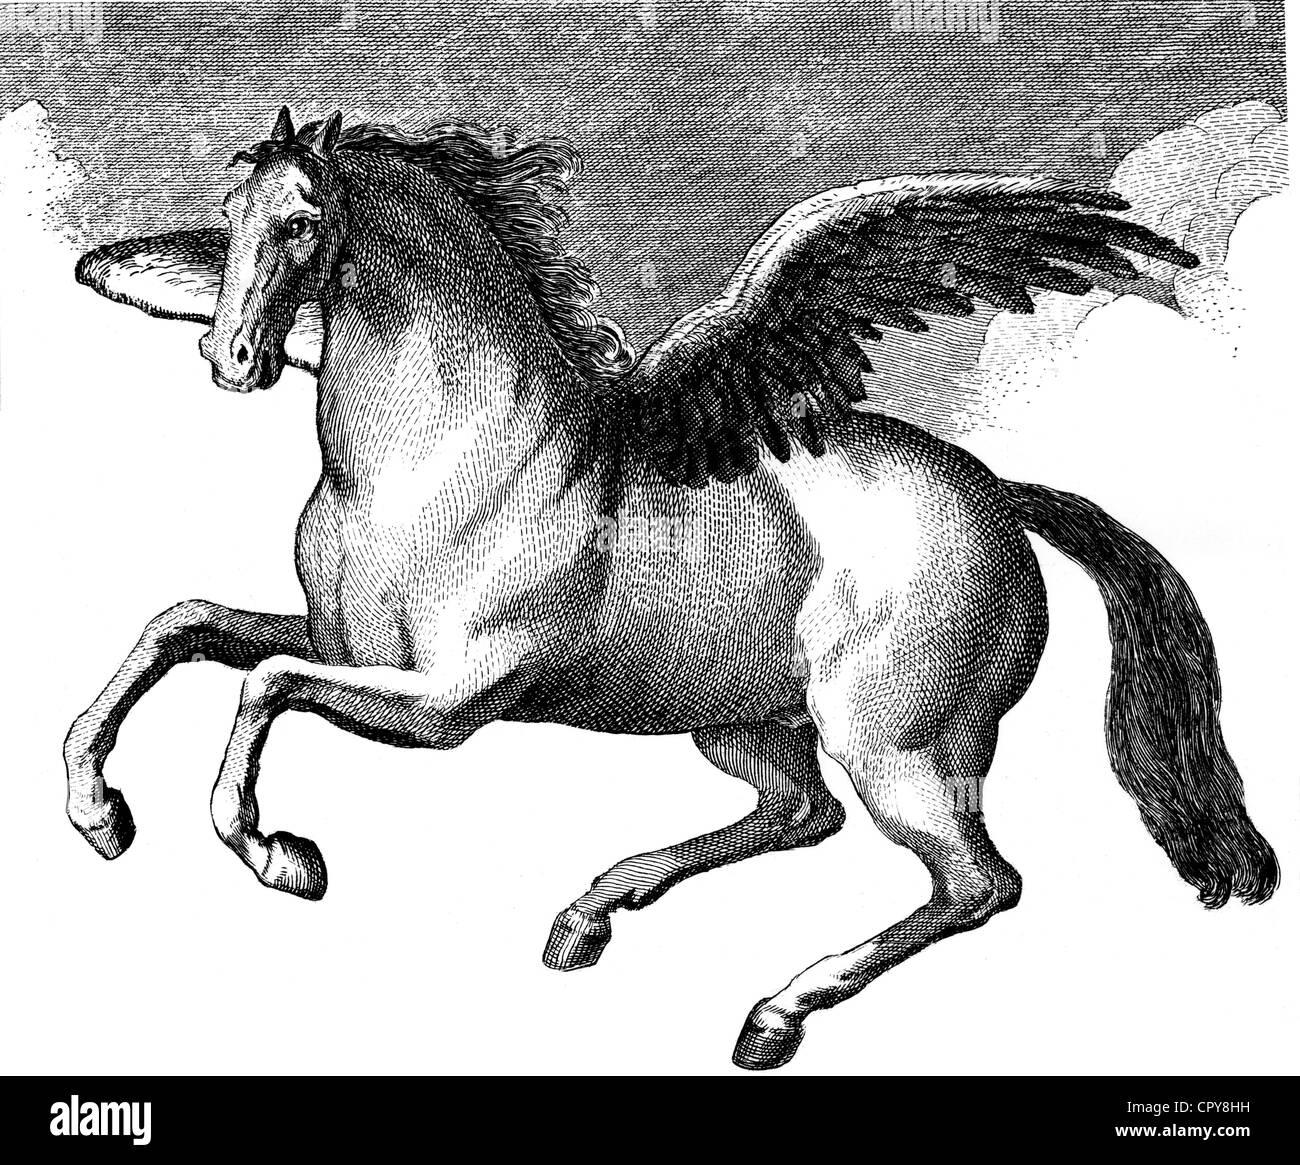 Pegasus, greco figura leggendaria, cavallo alato, basato su incisione su rame, metà del XVIII secolo, artista del diritto d'autore non deve essere cancellata Foto Stock